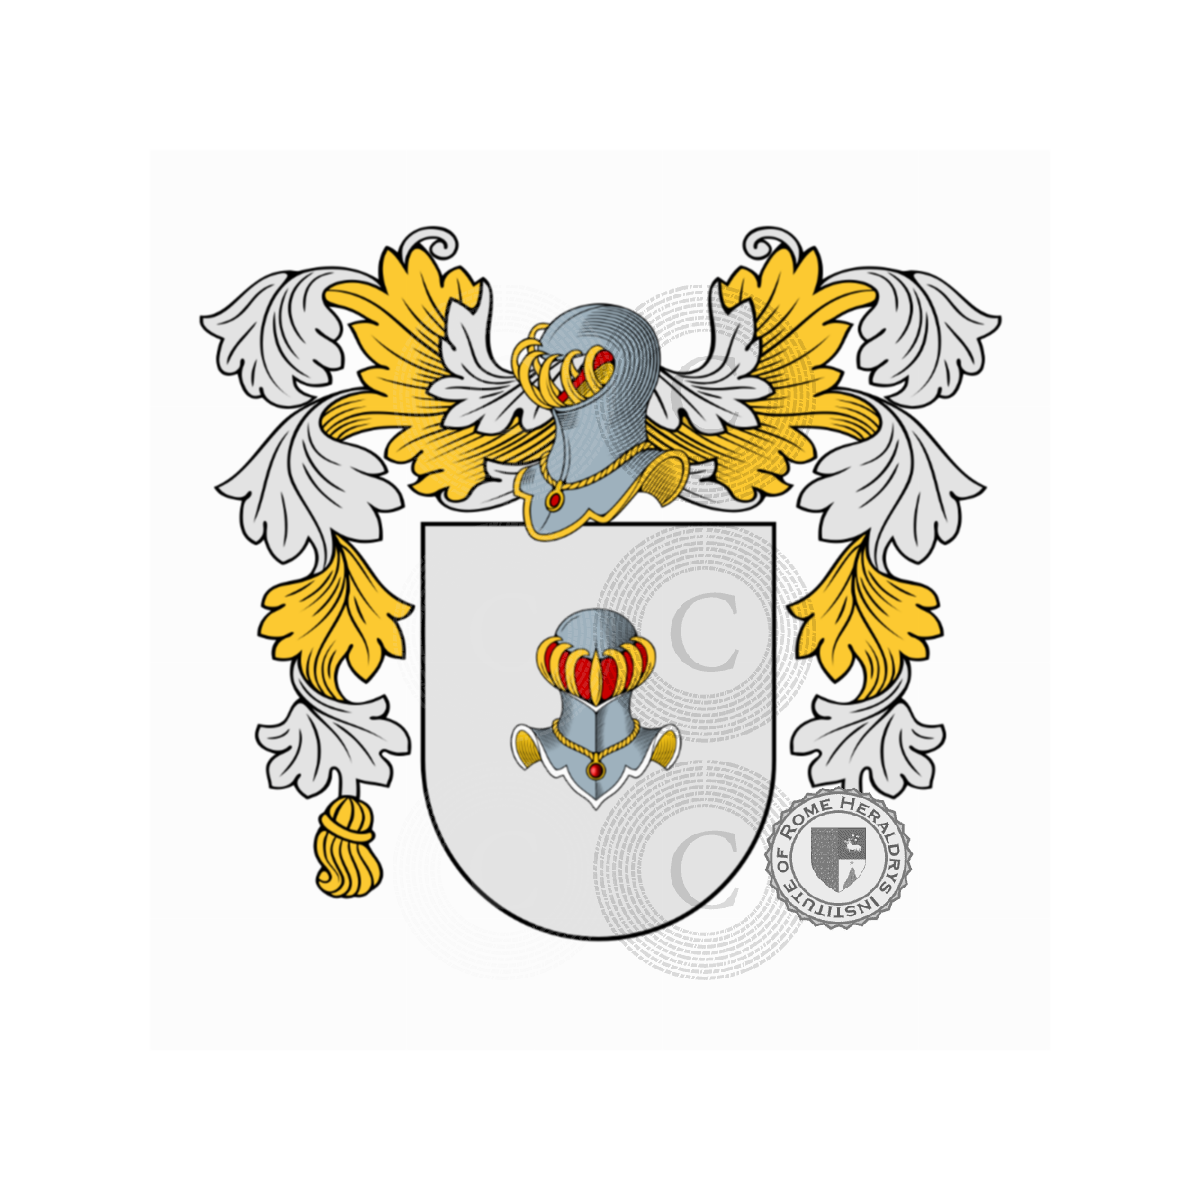 Wappen der FamilieMagnisi, Magni